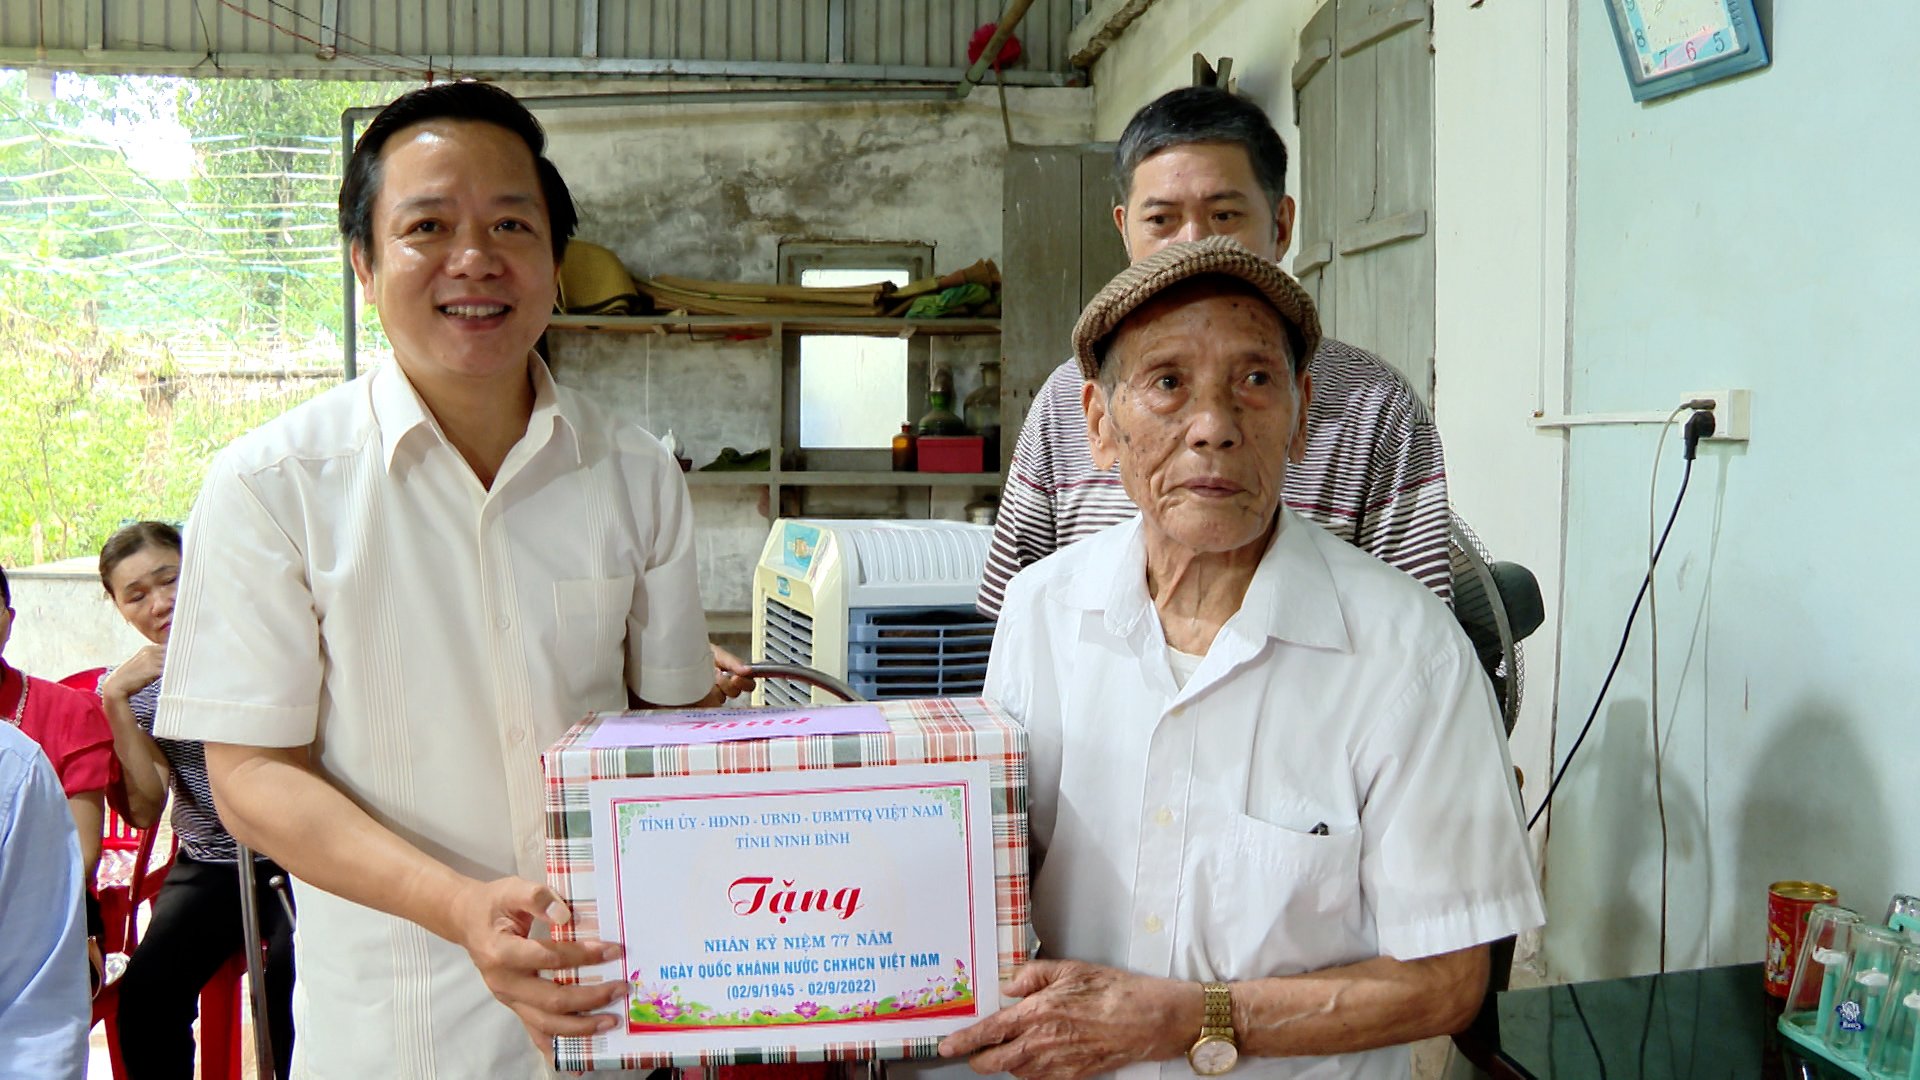 Đoàn đại biểu lãnh đạo của tỉnh và thành phố đến thăm, tặng quà ông Lương Đắc Bằng, cán bộ lão thành cách mạng, nhân dịp kỷ niệm 77 năm ngày Quốc khánh nước Cộng hòa xã hội chủ nghĩa Việt Nam (2/9/1945 – 2/9/2022)